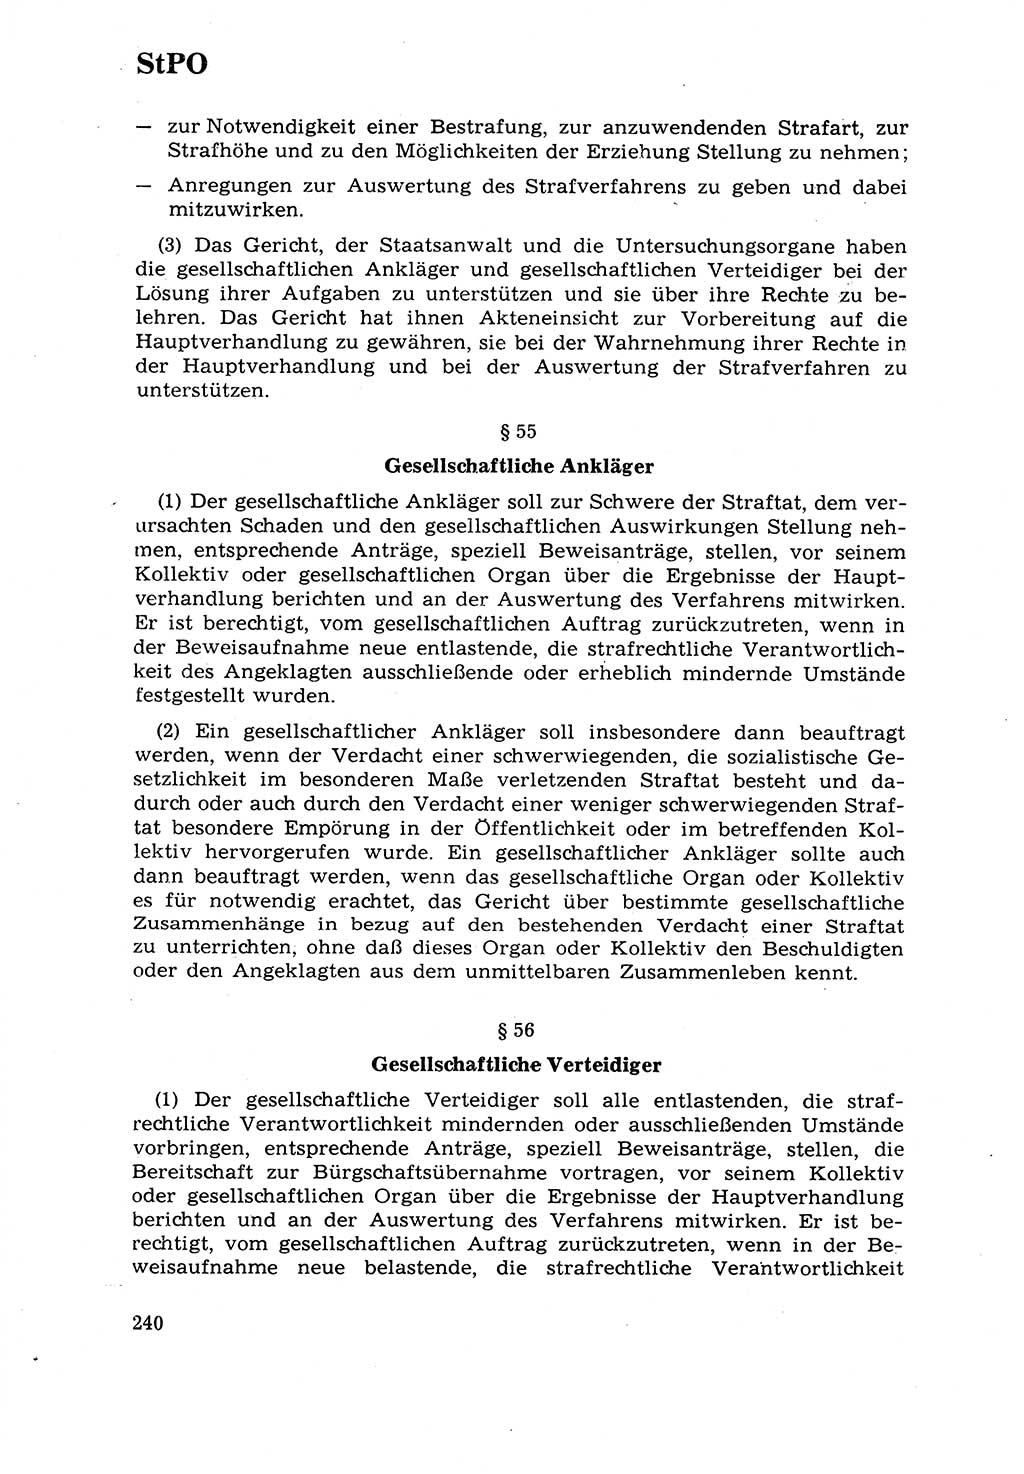 Strafrecht [Deutsche Demokratische Republik (DDR)] 1968, Seite 240 (Strafr. DDR 1968, S. 240)